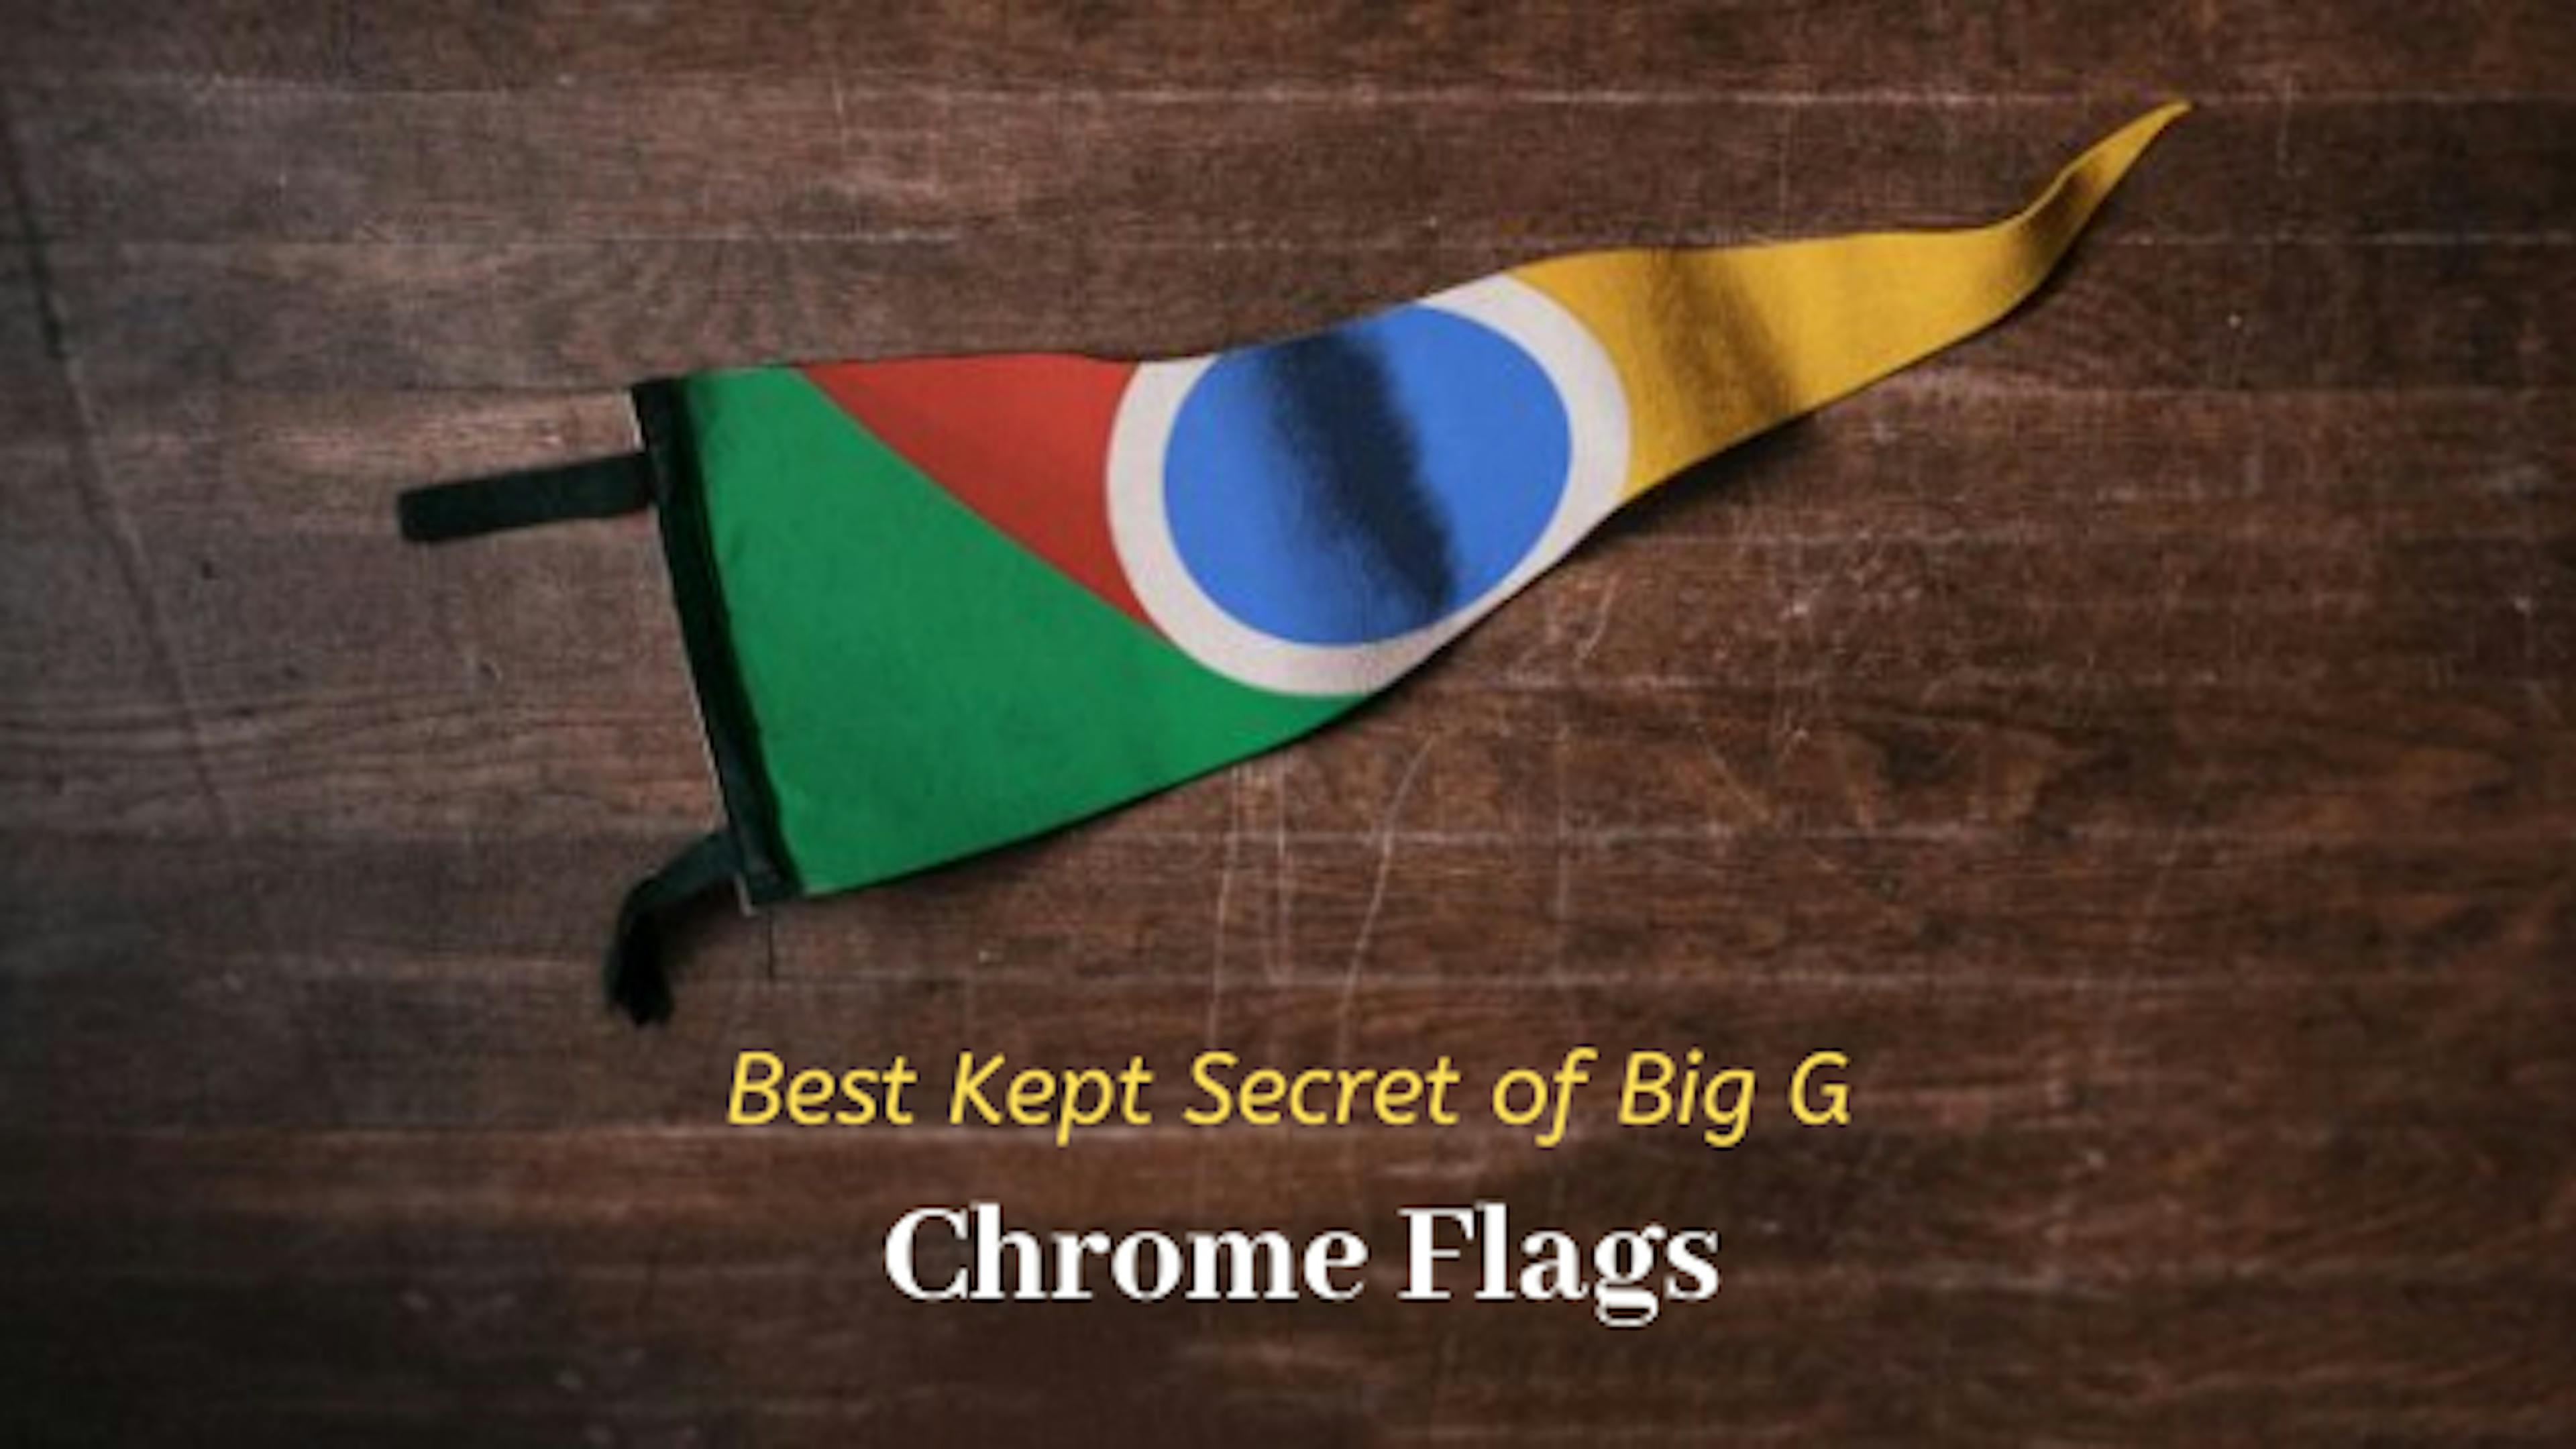 /googles-best-semi-secret-experiment-chrome-flags-rh7r3btf feature image